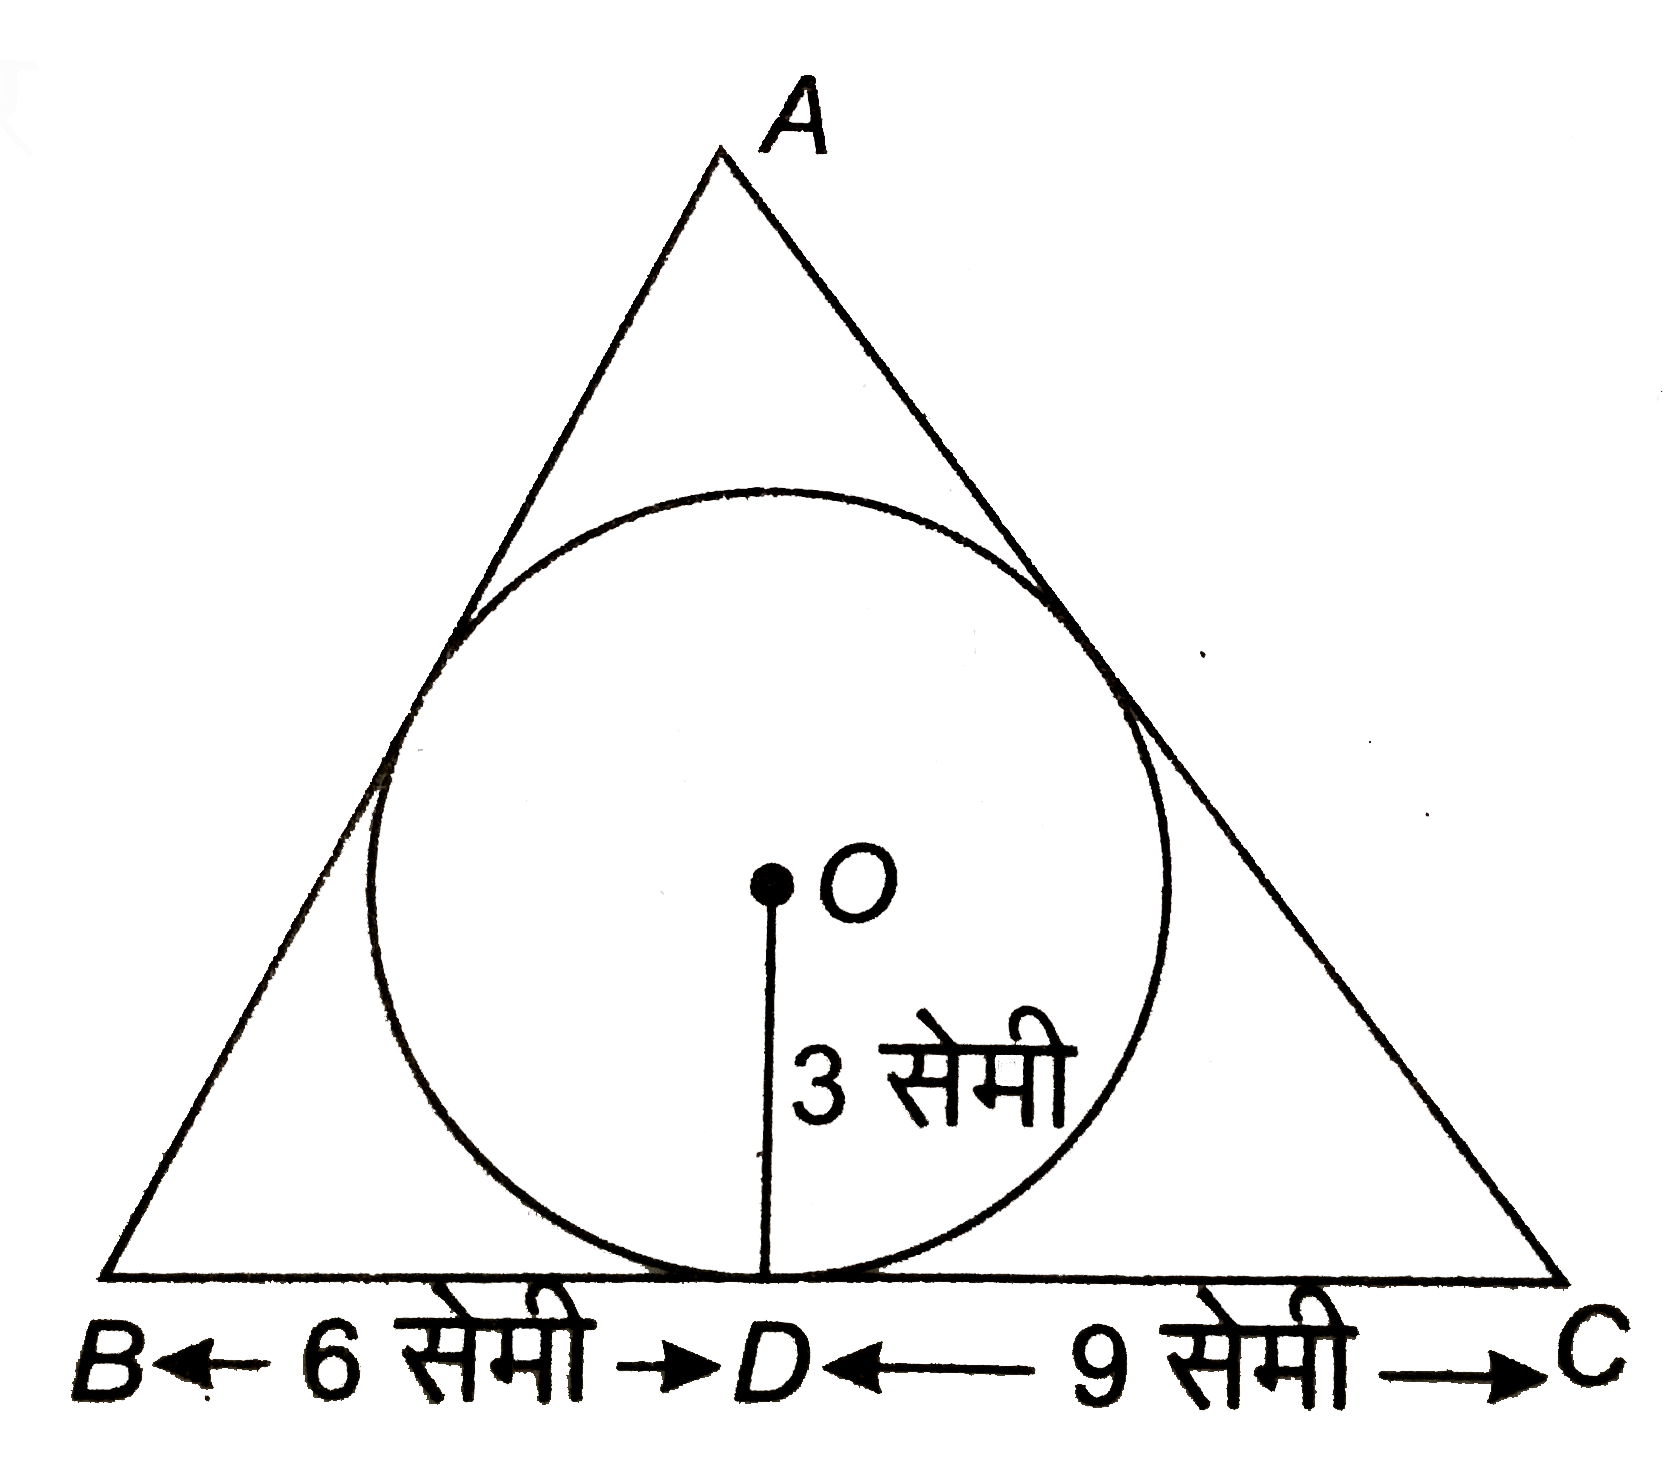 दी आकृति में, DeltaABC, 3 सेमी त्रिज्या के वृत्त के परिगत इस प्रकार है कि BD = 6 सेमी और DC = 9 सेमी है। यदि DeltaABC का क्षेत्रफल 54